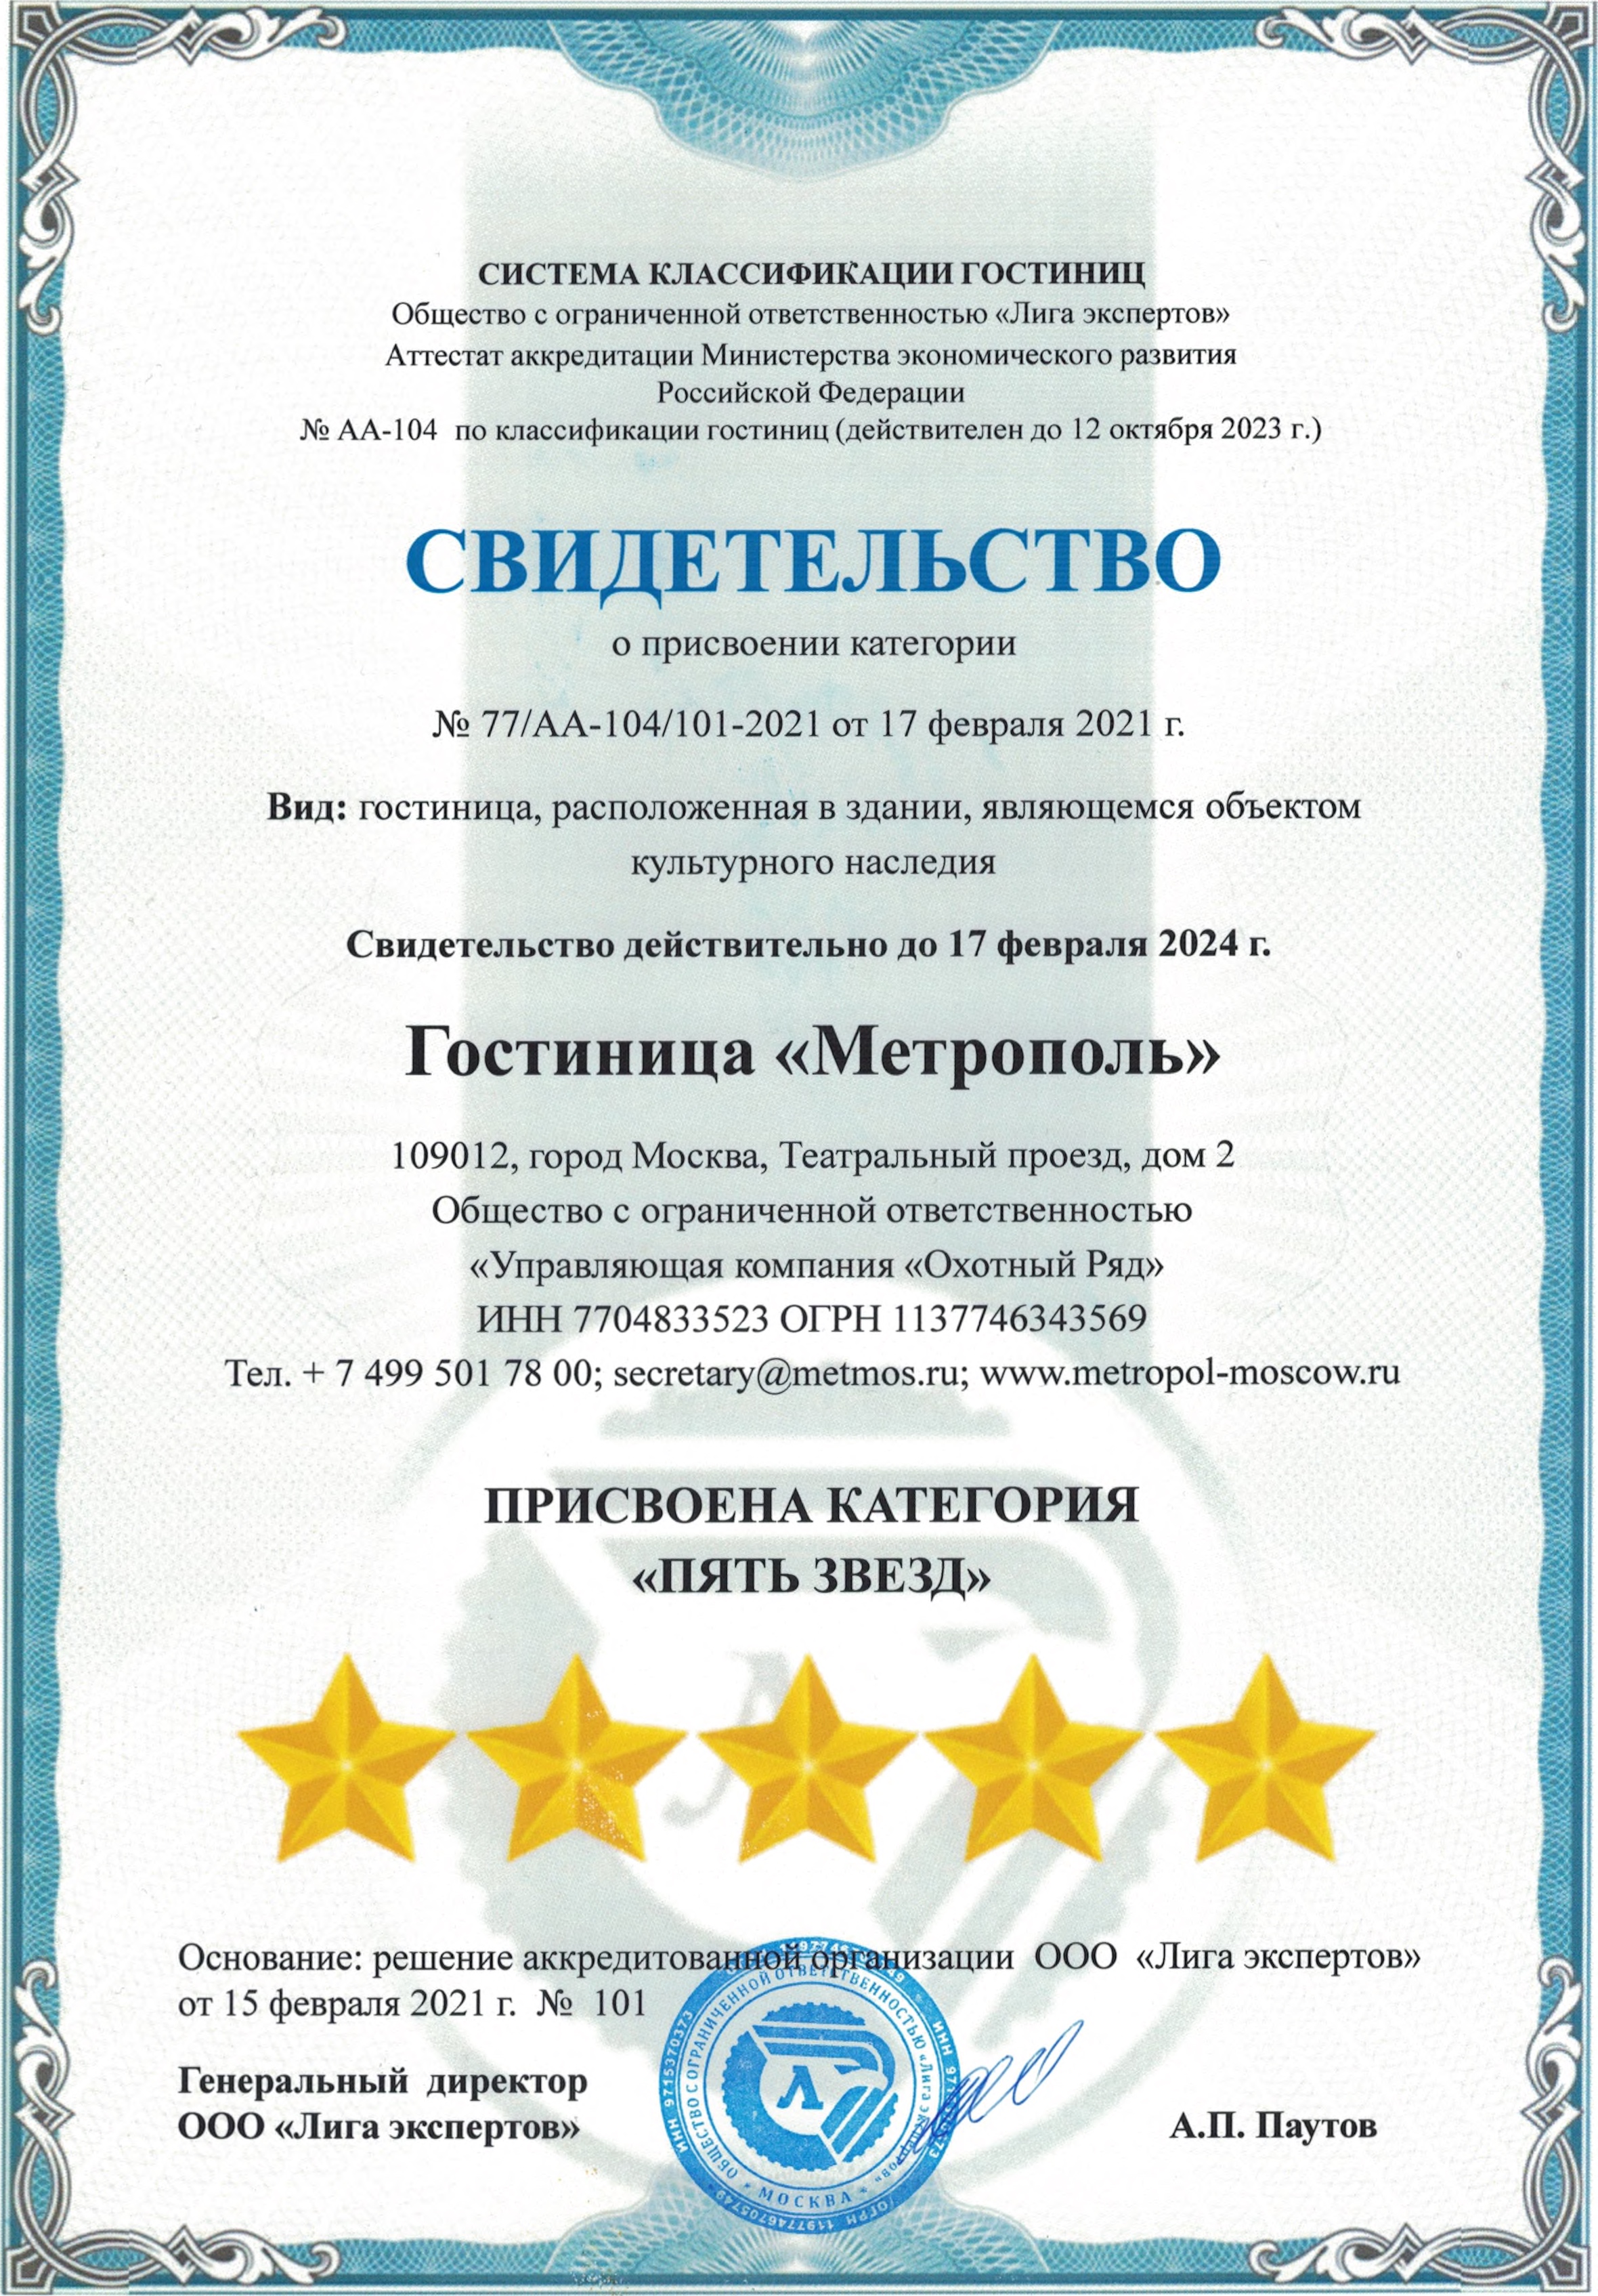 Гостинице «Метрополь» присвоили категорию «пять звезд». Источник: metropol-moscow.ru